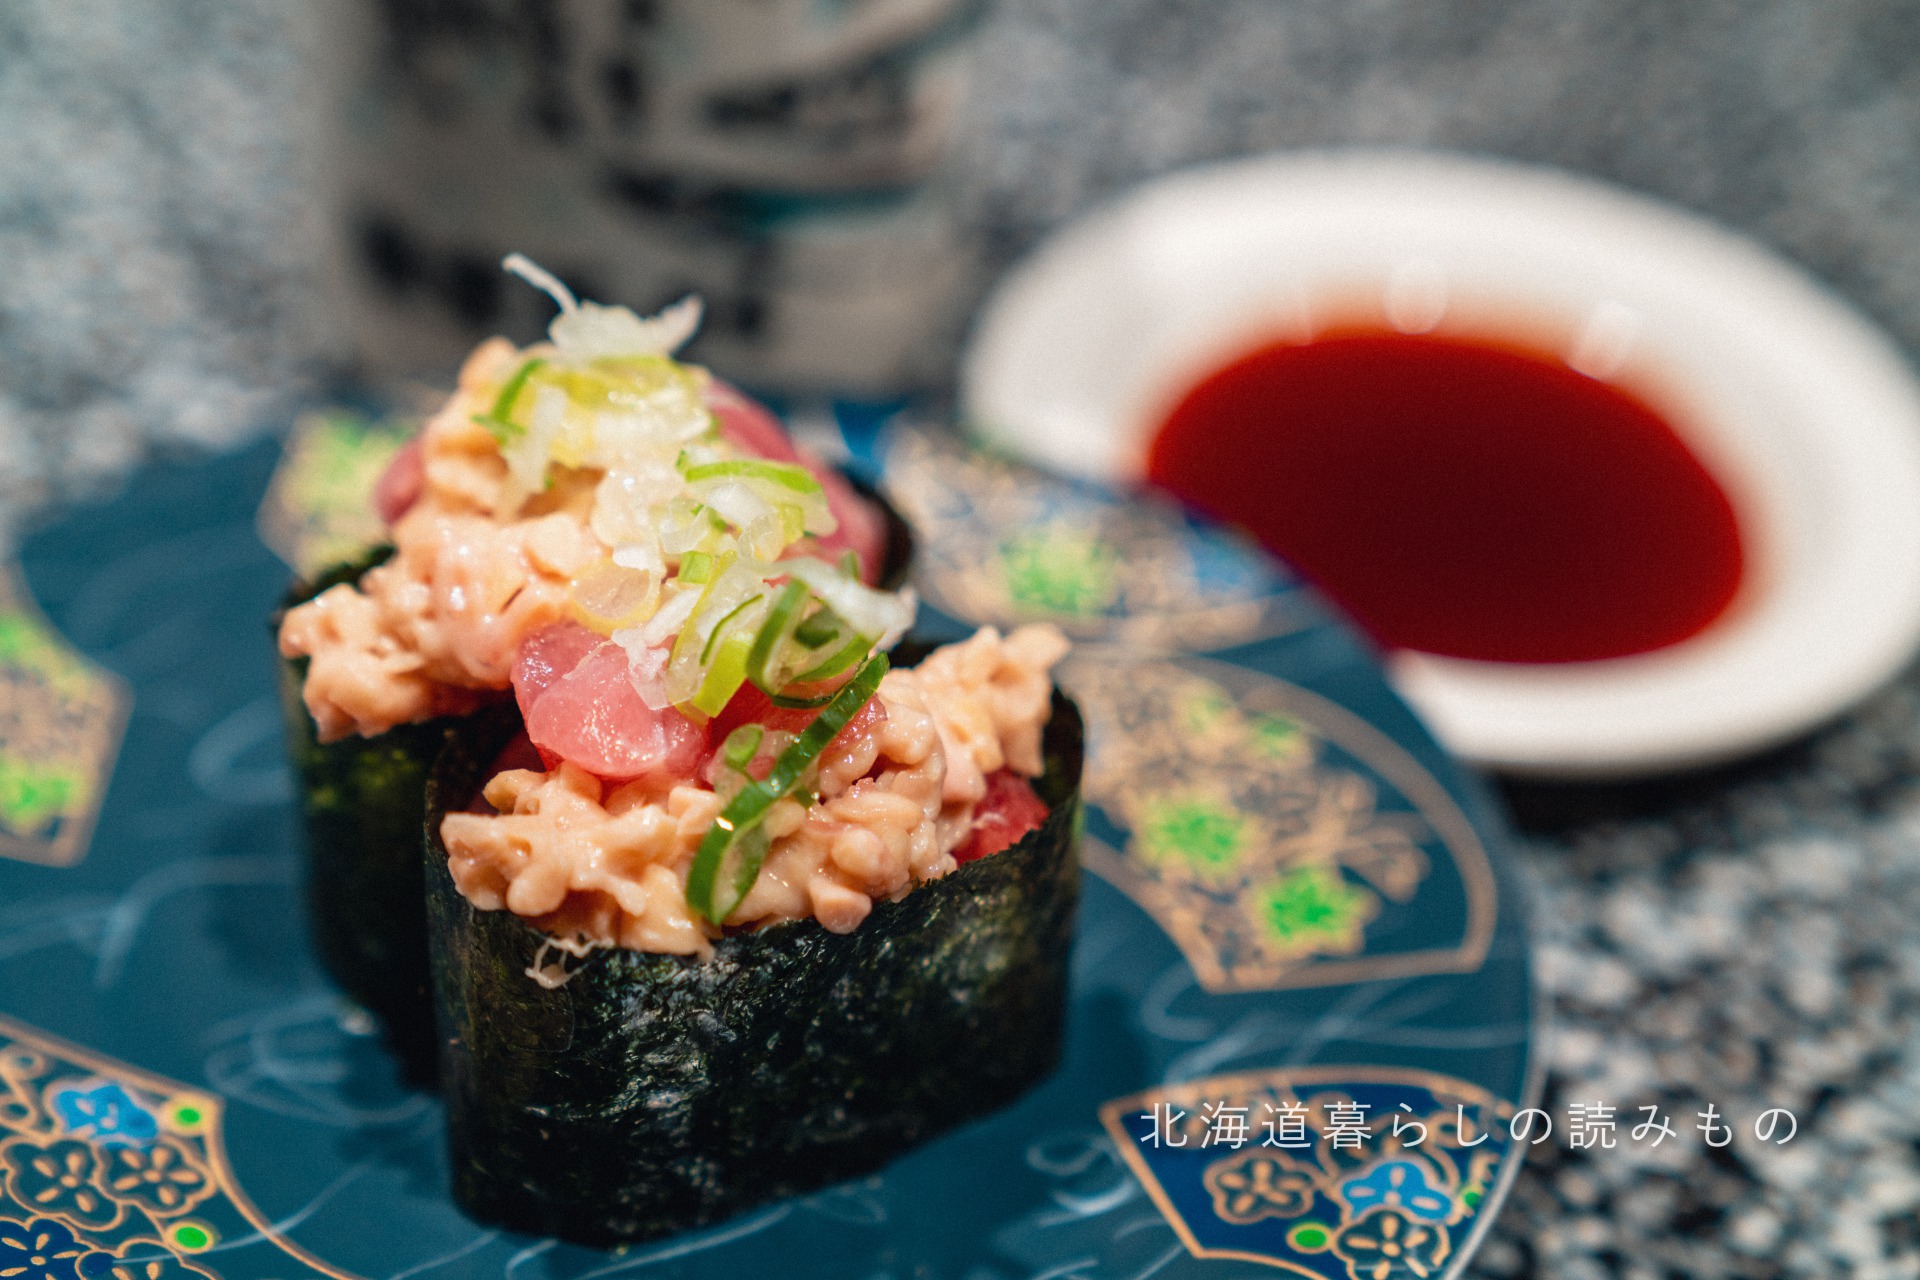 回転寿司 根室花まるのメニュー「まぐろ納豆」の写真